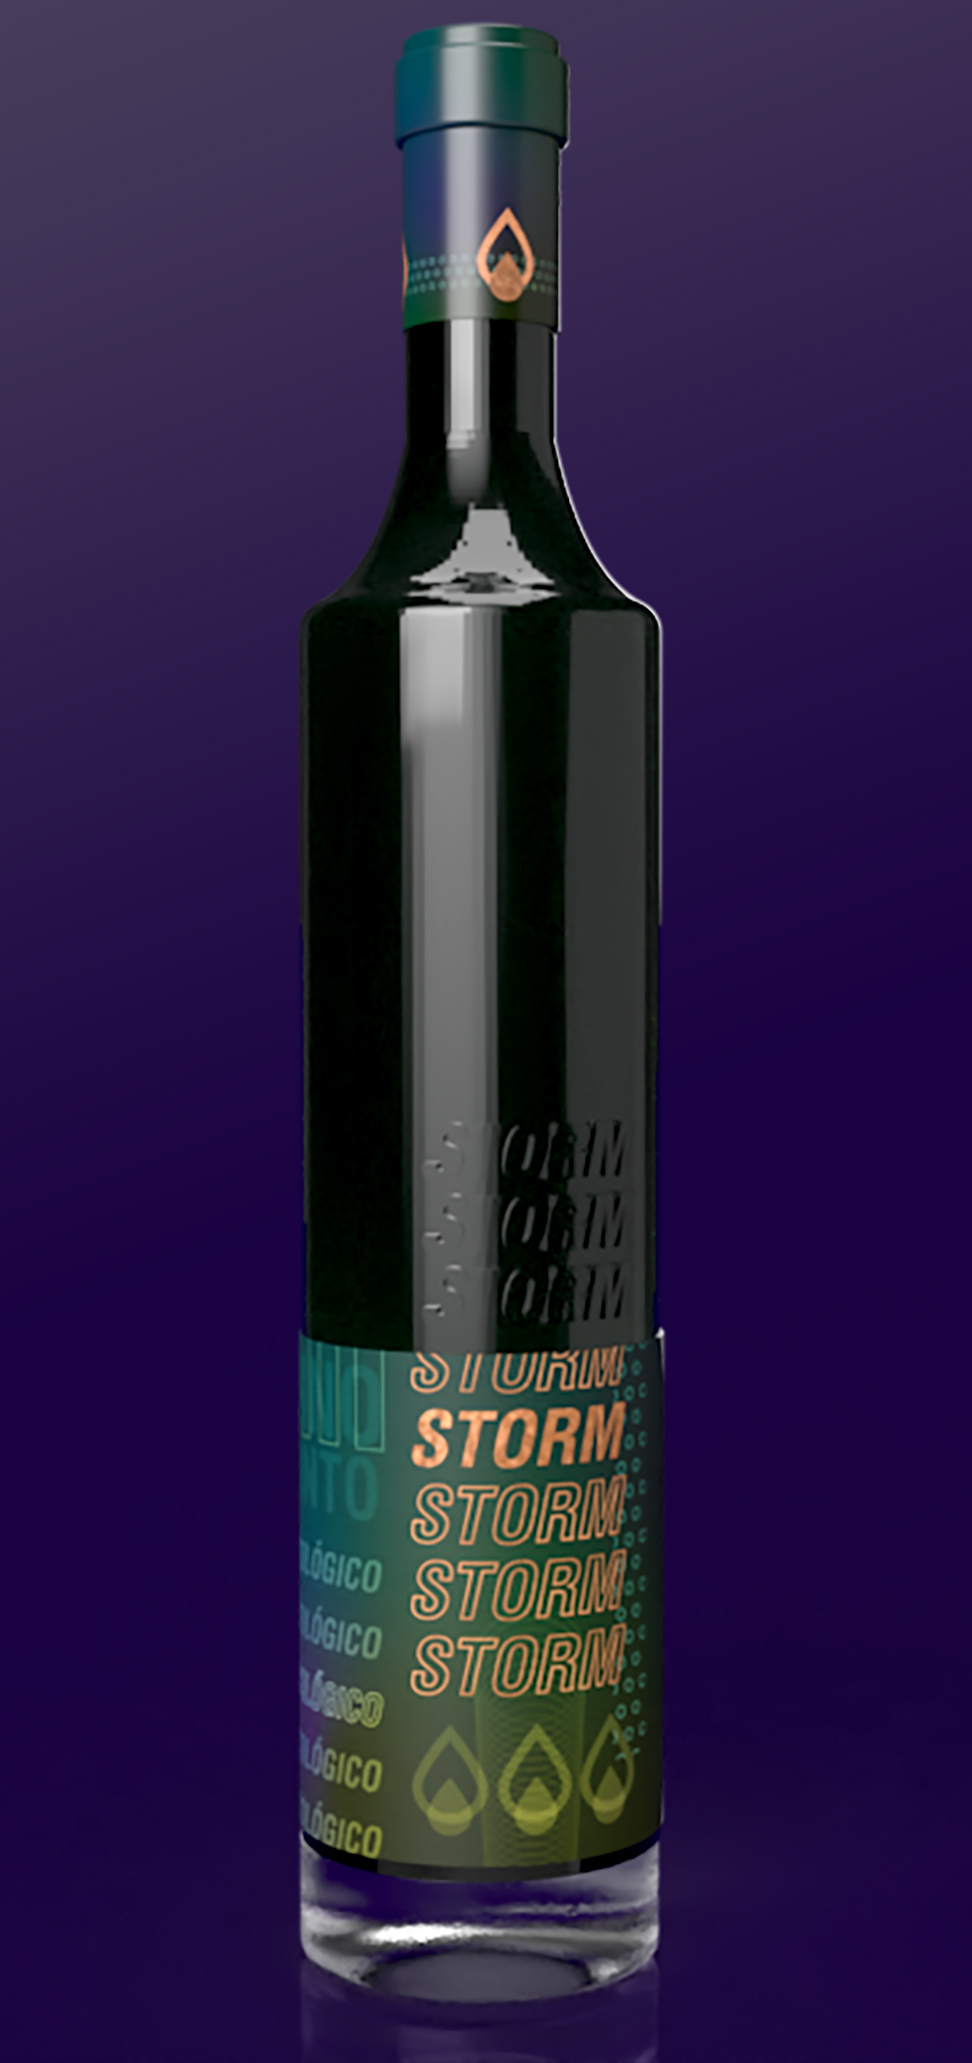 'Storm' Vino ecológico by Noelia García - Creative Work